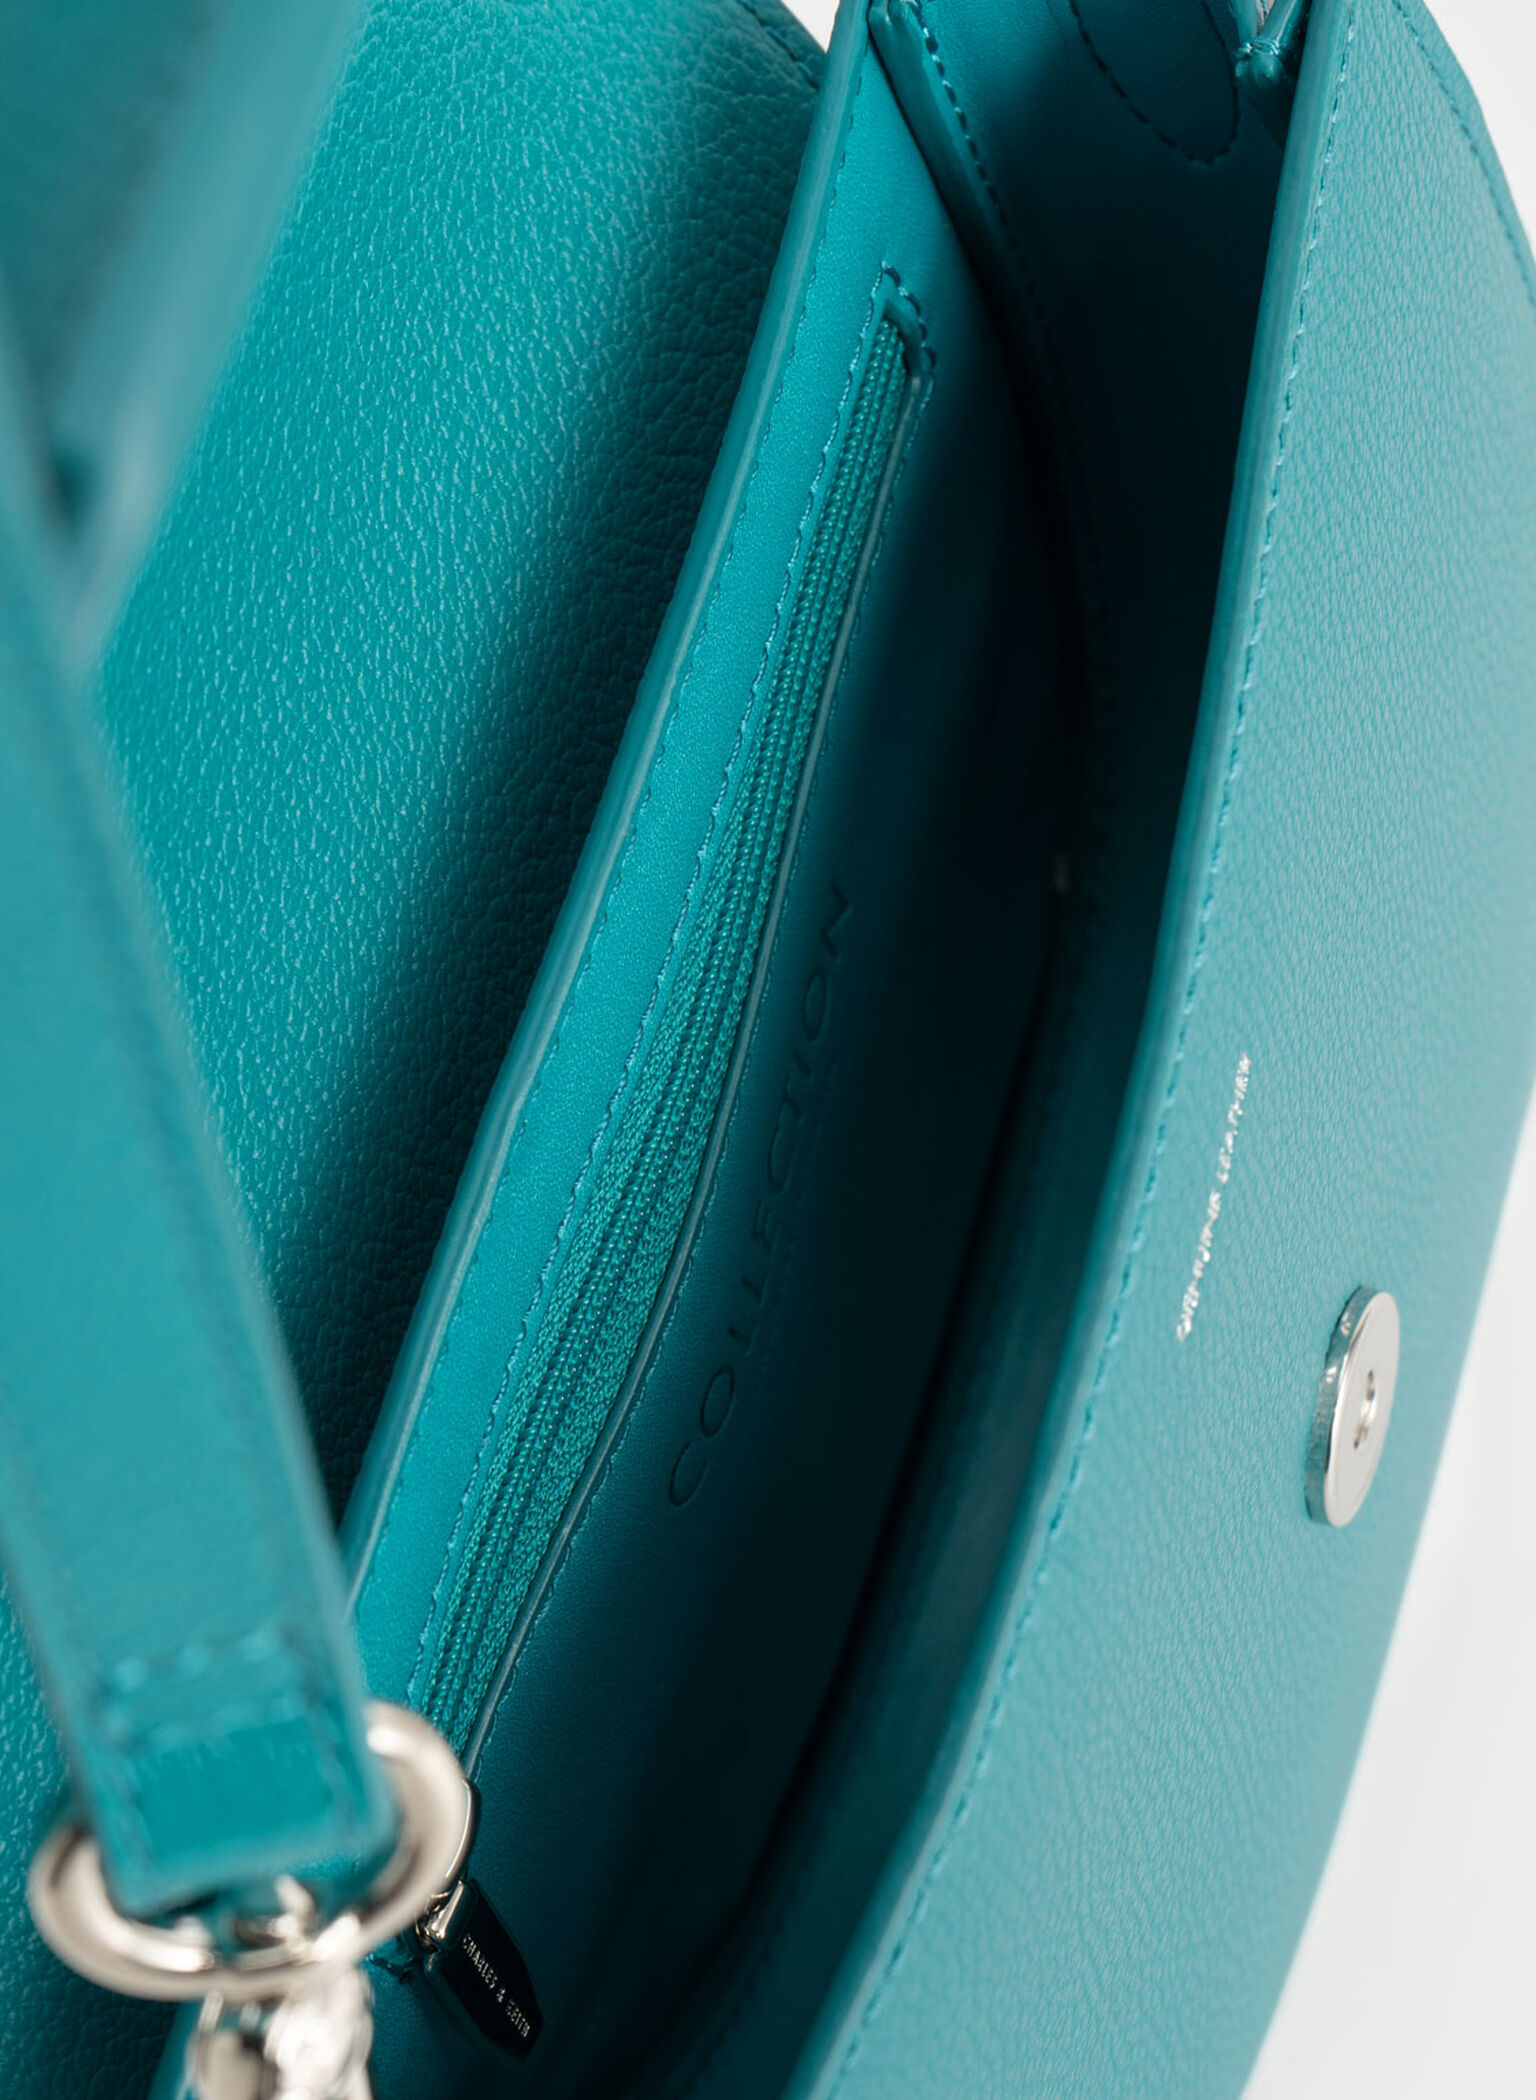 Mini sacoche en cuir Gabine turquoise - CHARLES & KEITH FR